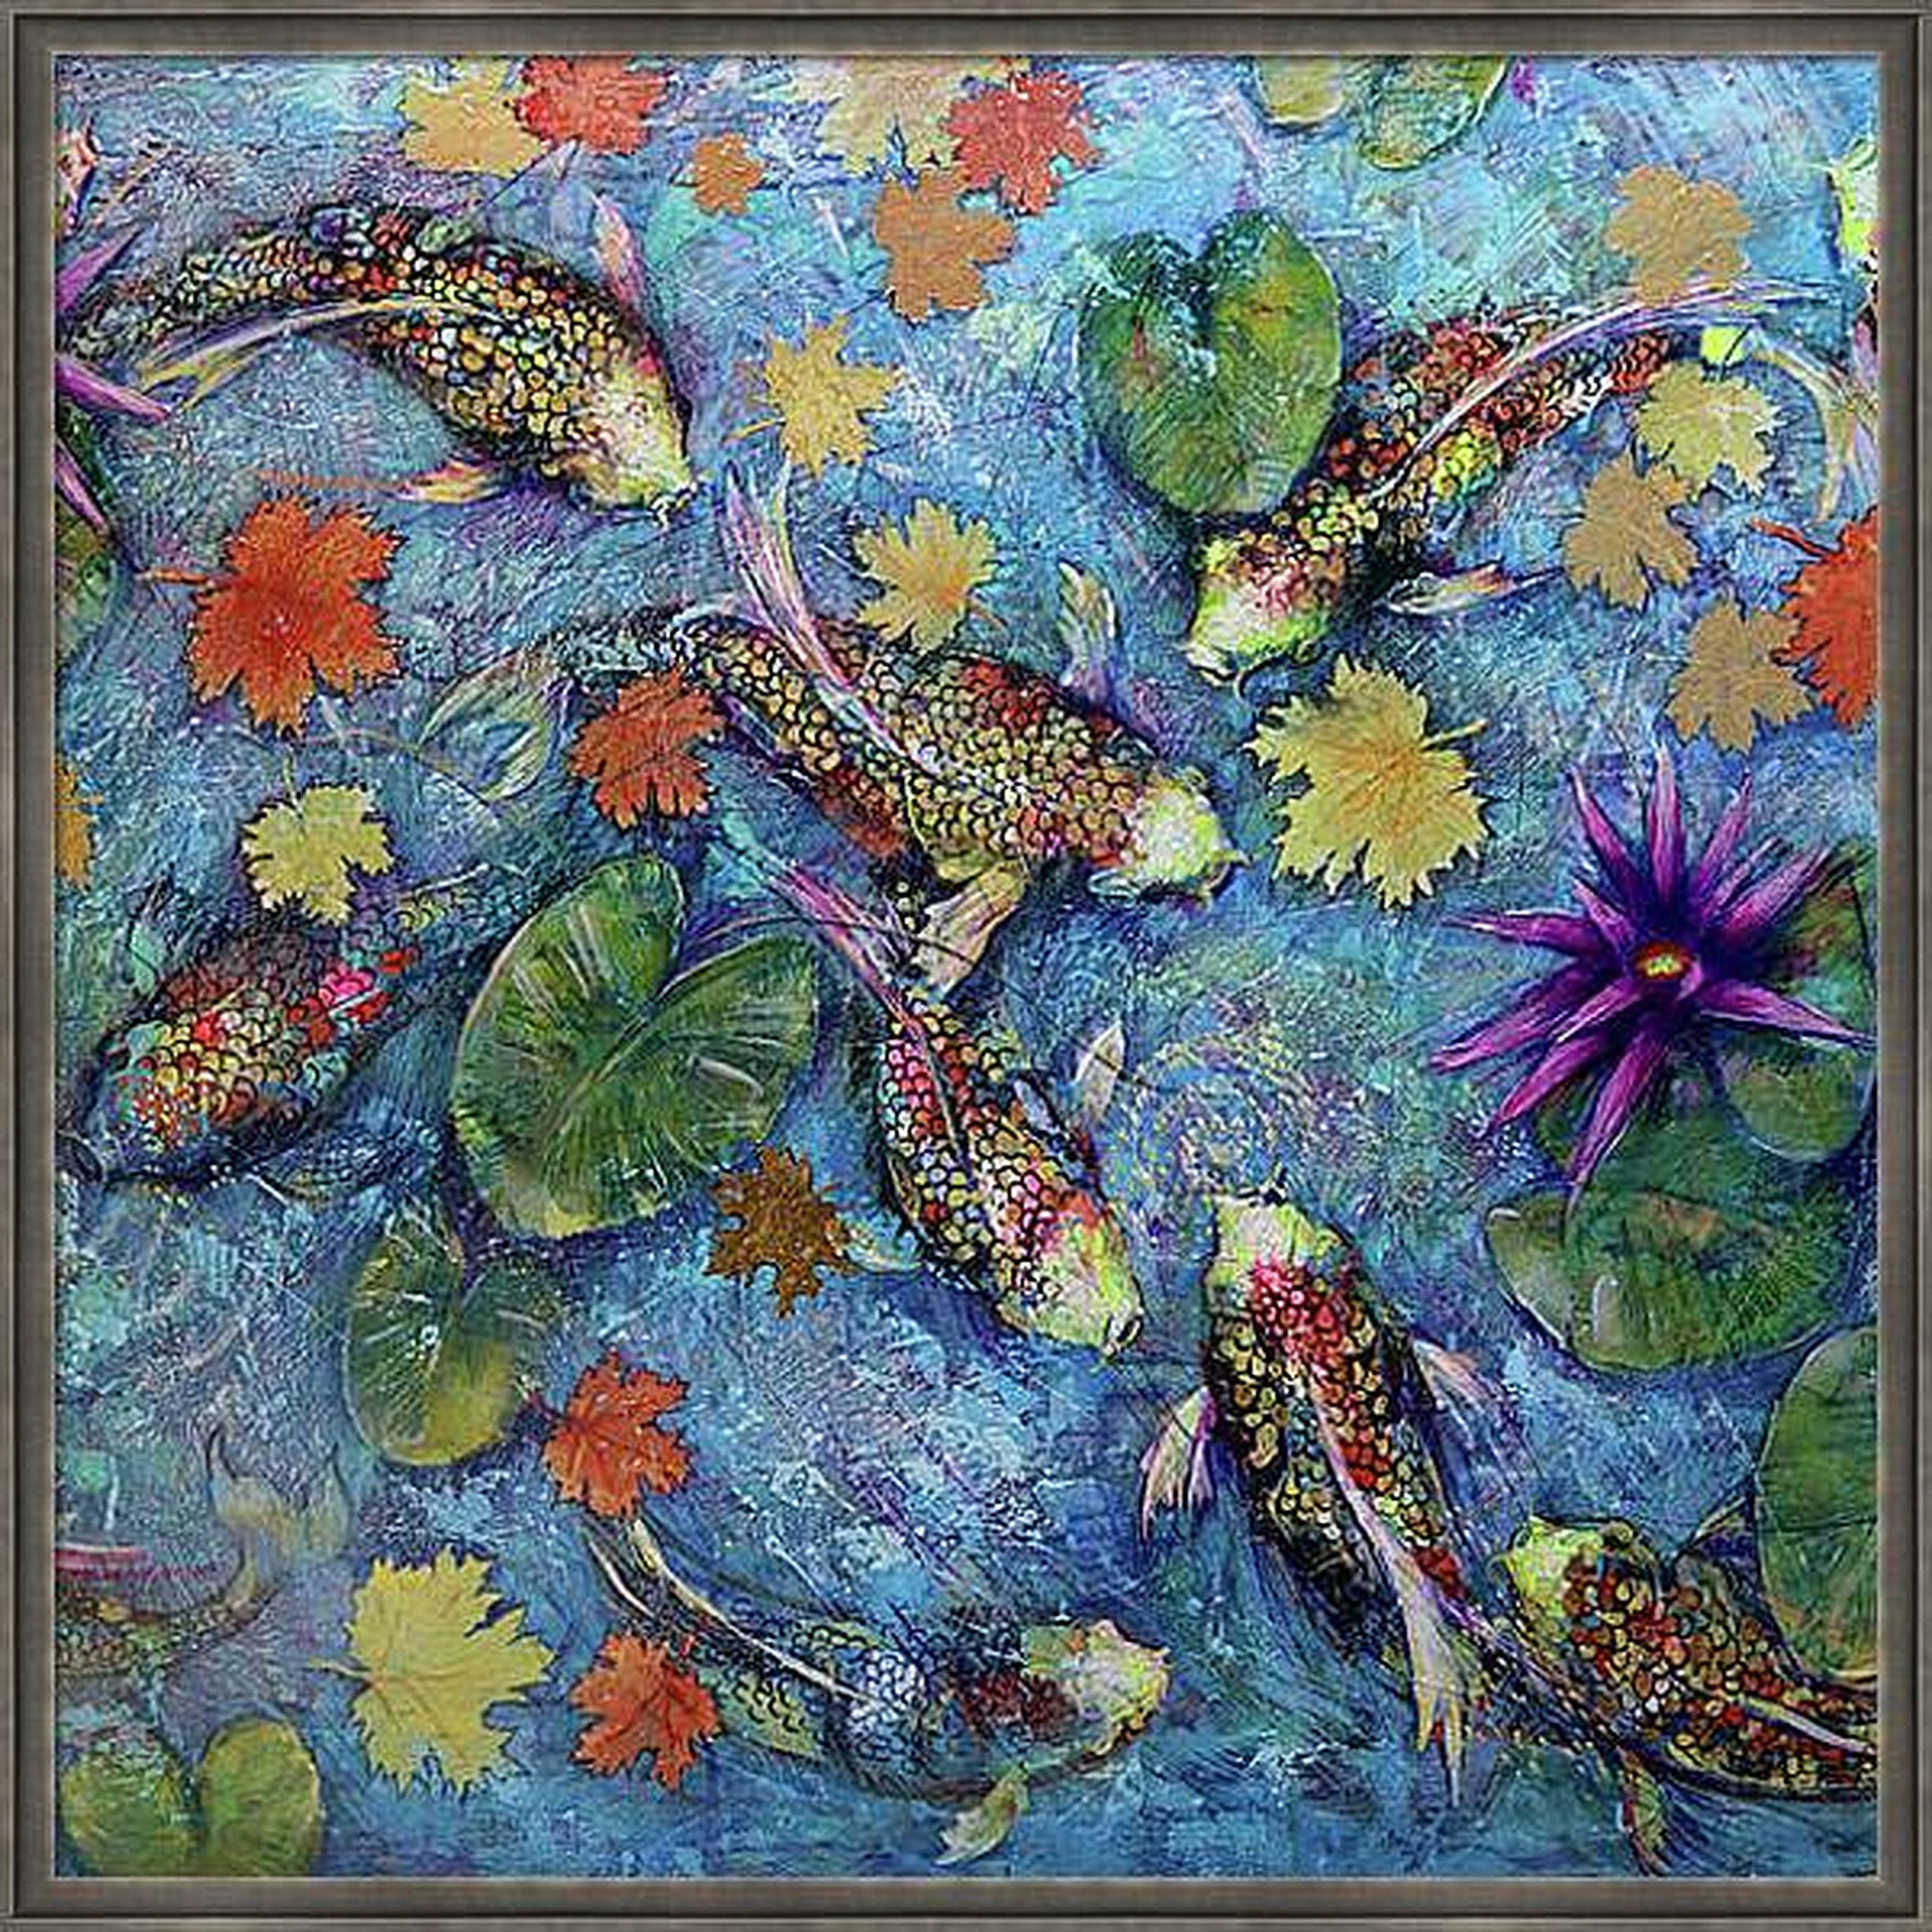 Koi Fish and Golden Leaves - Painting by RAKHMET REDZHEPOV (RAMZI)